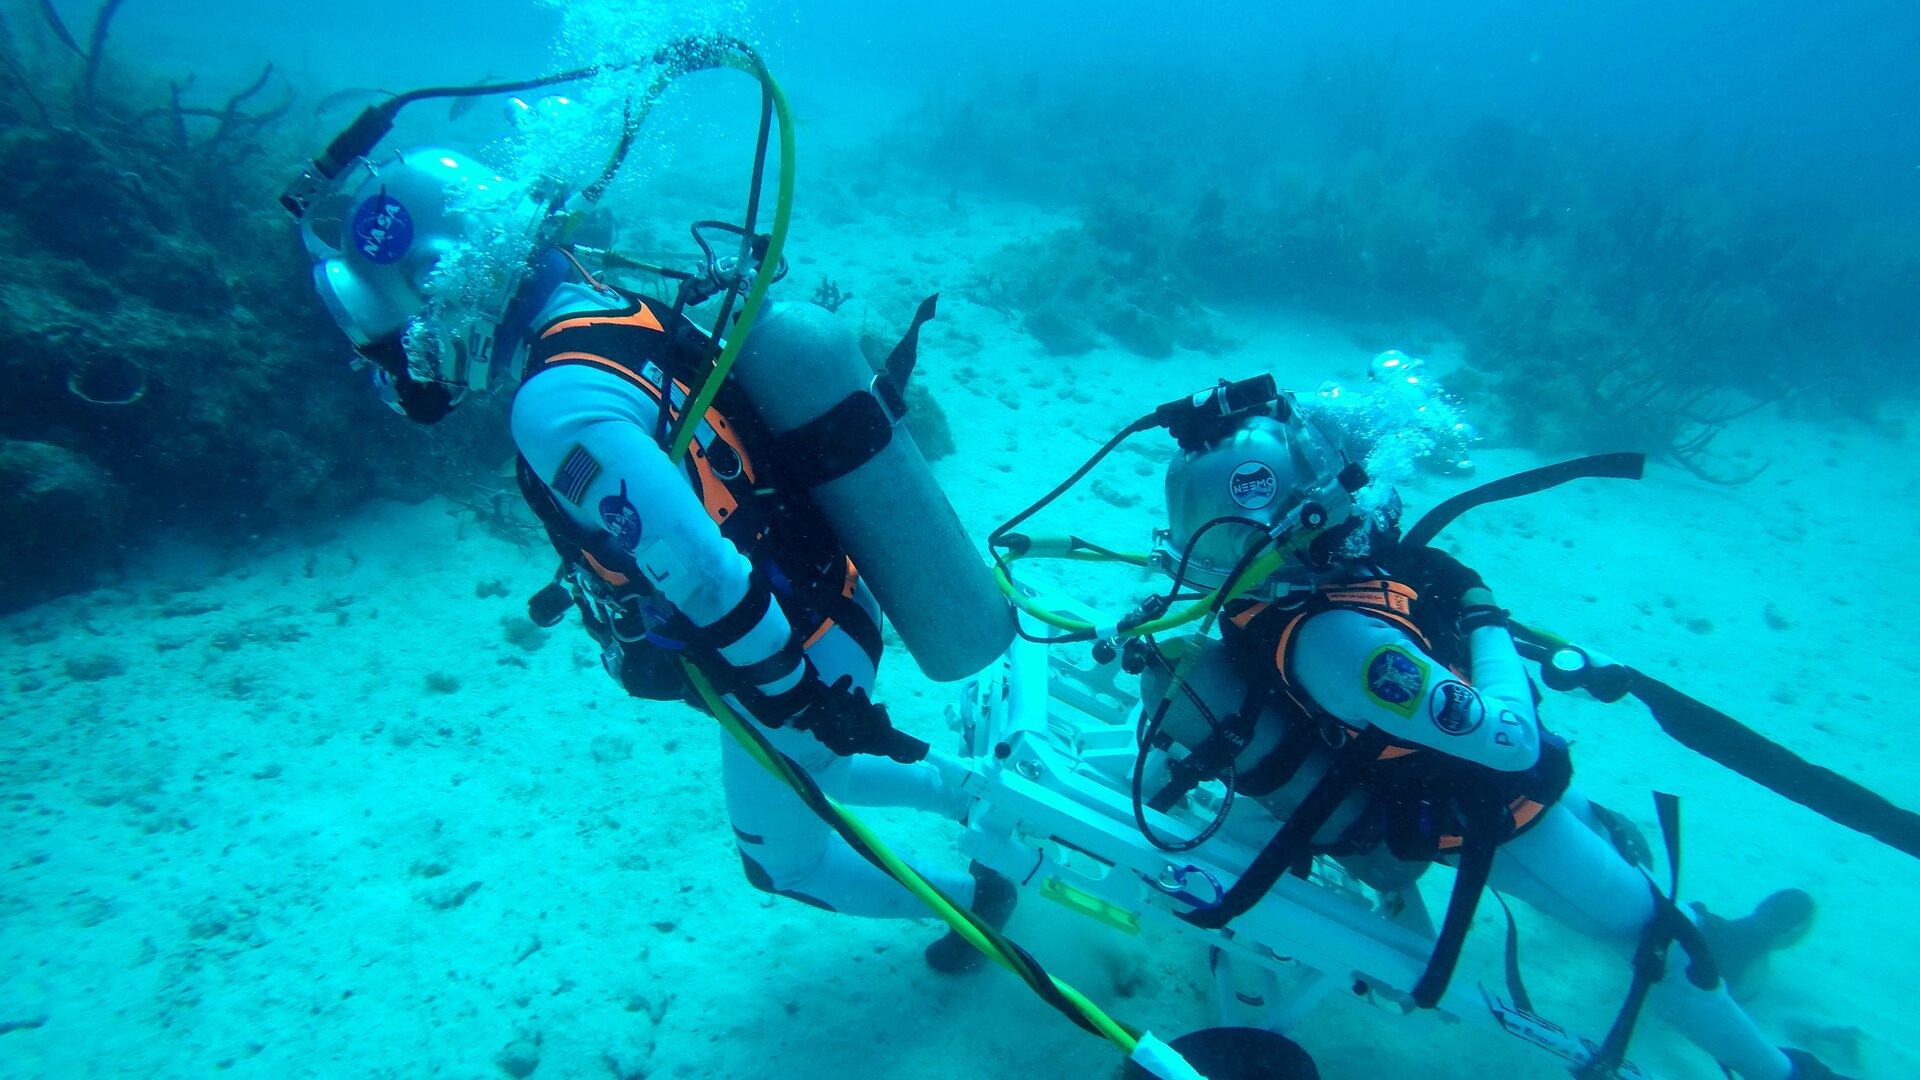 Underwater rescue